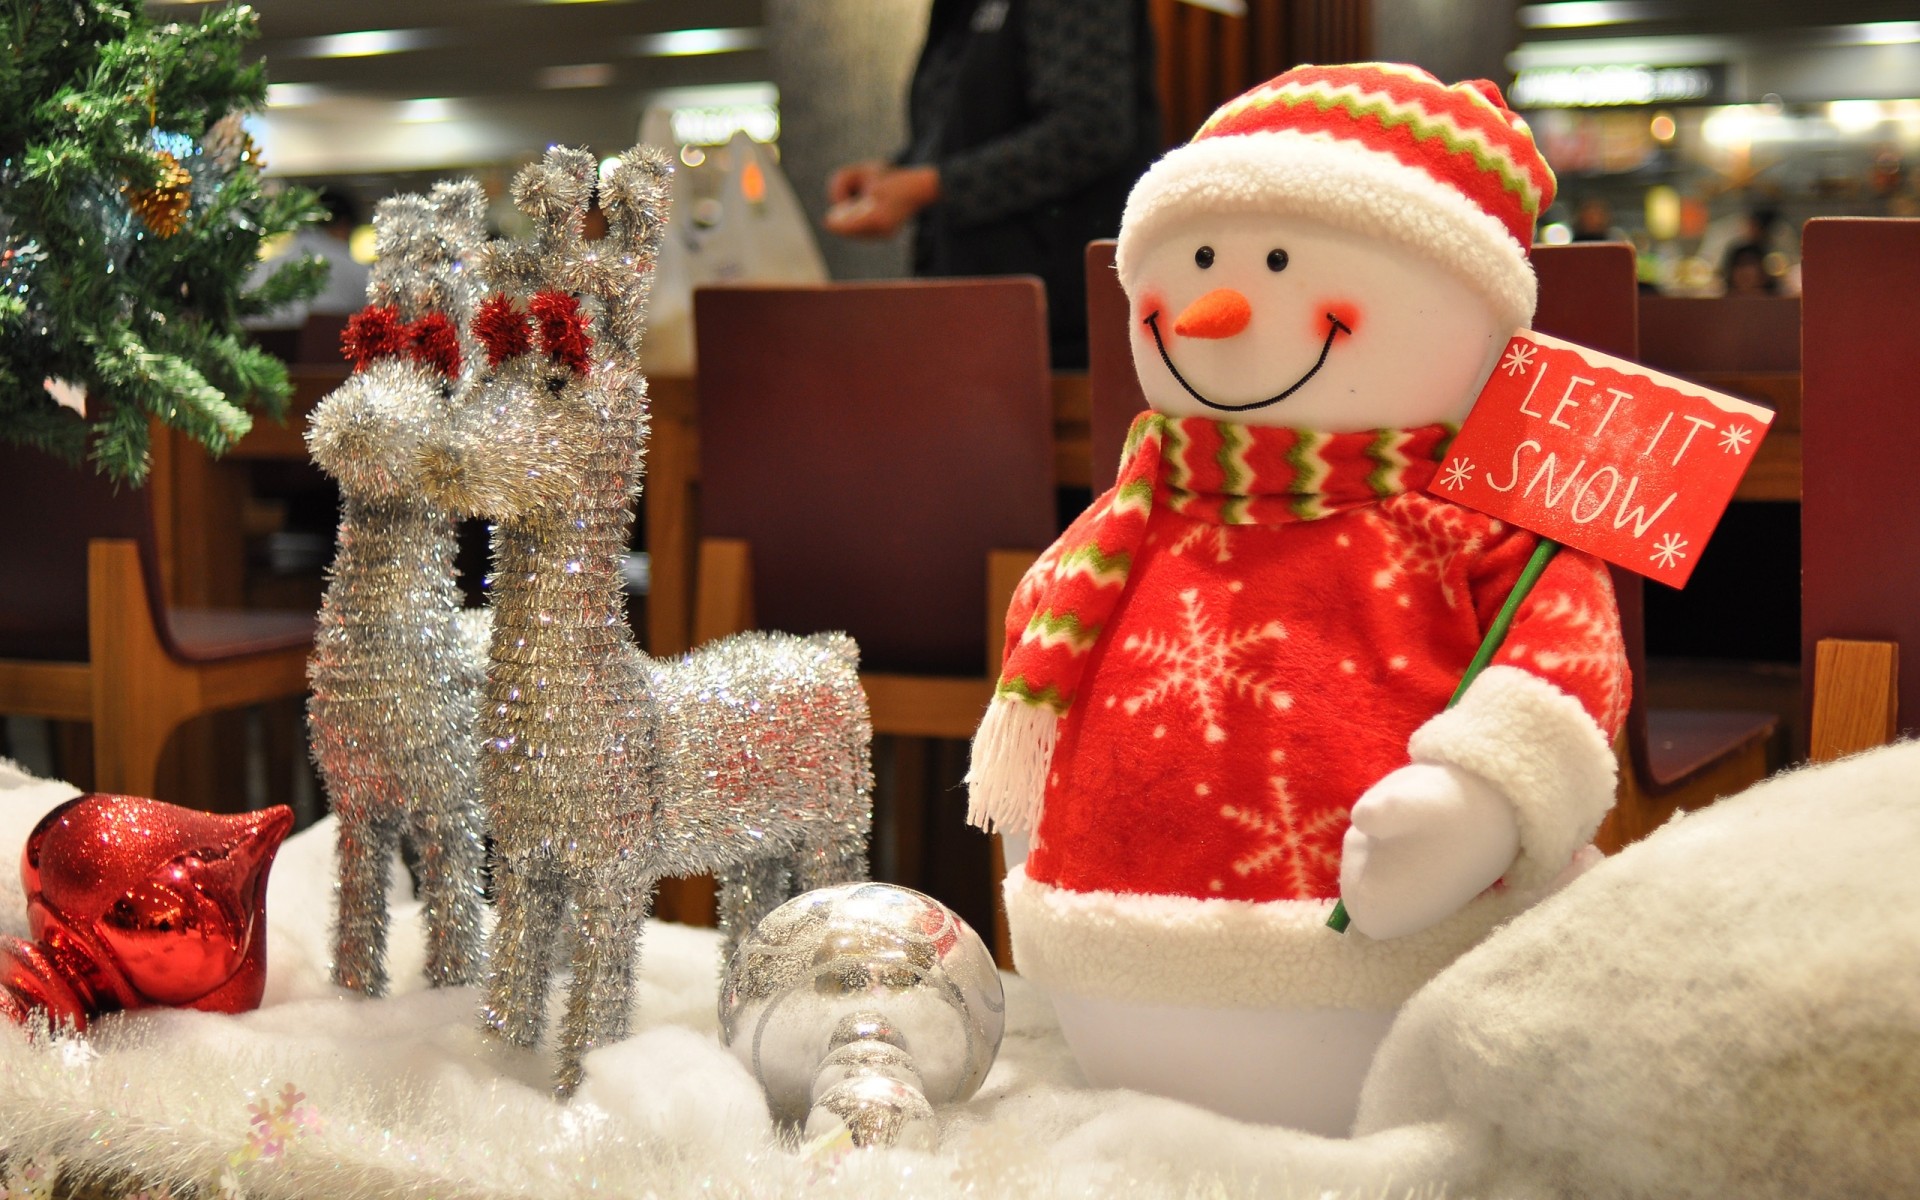 рождество зима праздник подарок украшения снеговик игрушка снег мерри крышка рождественская елка традиционные кукла коробка